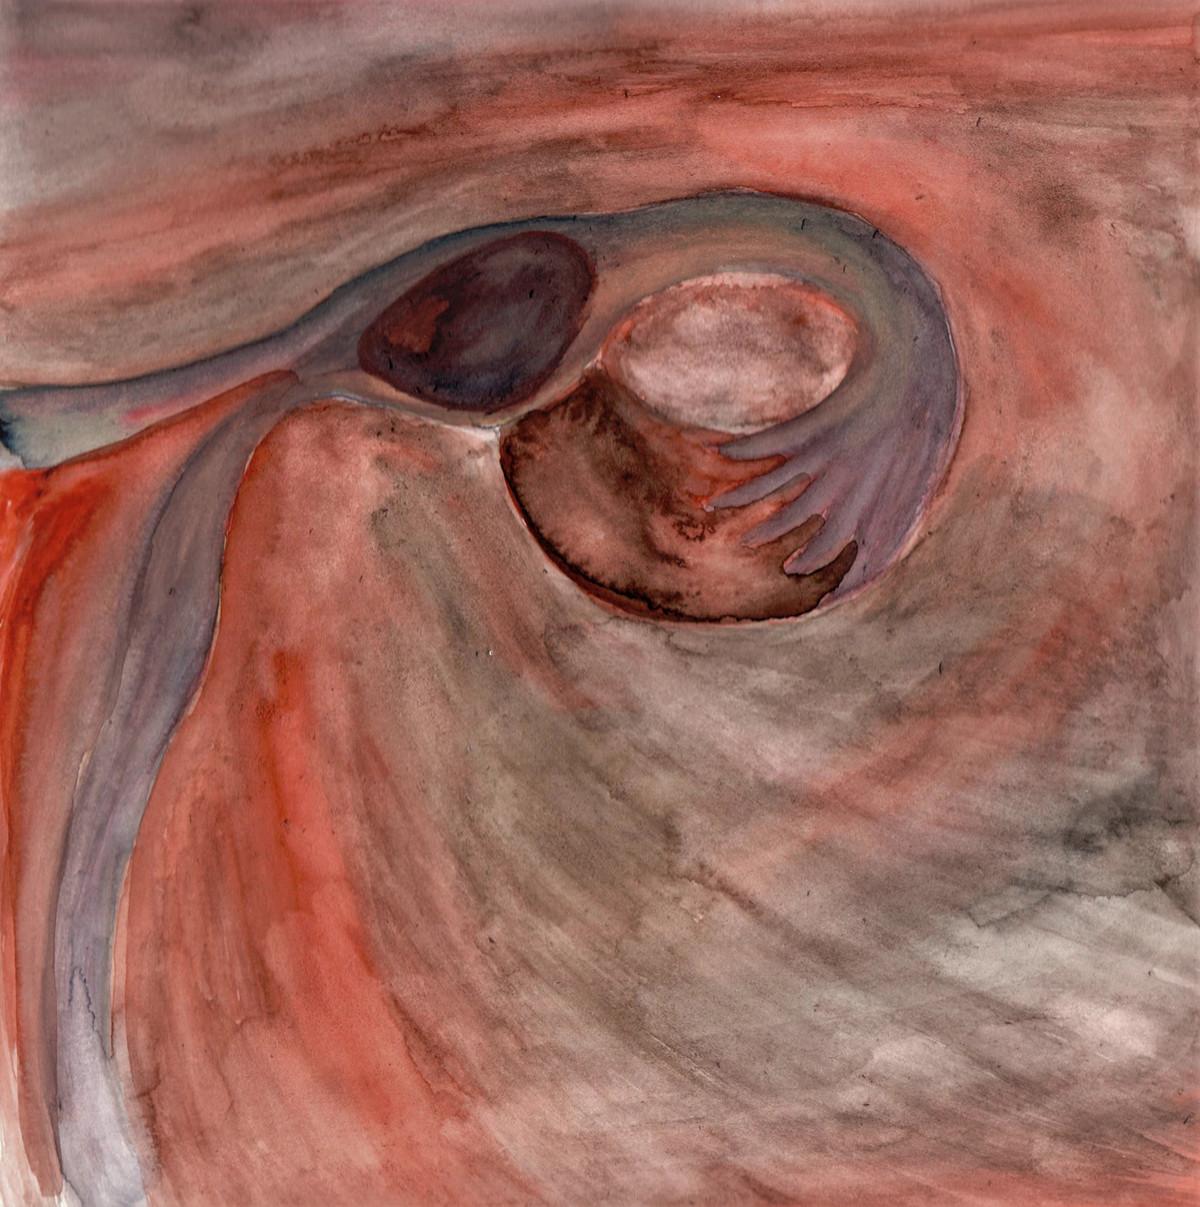 Ekstrauterin graviditet. Illustration: Hannah Angharad Feuerstein, akvarel, 2021.